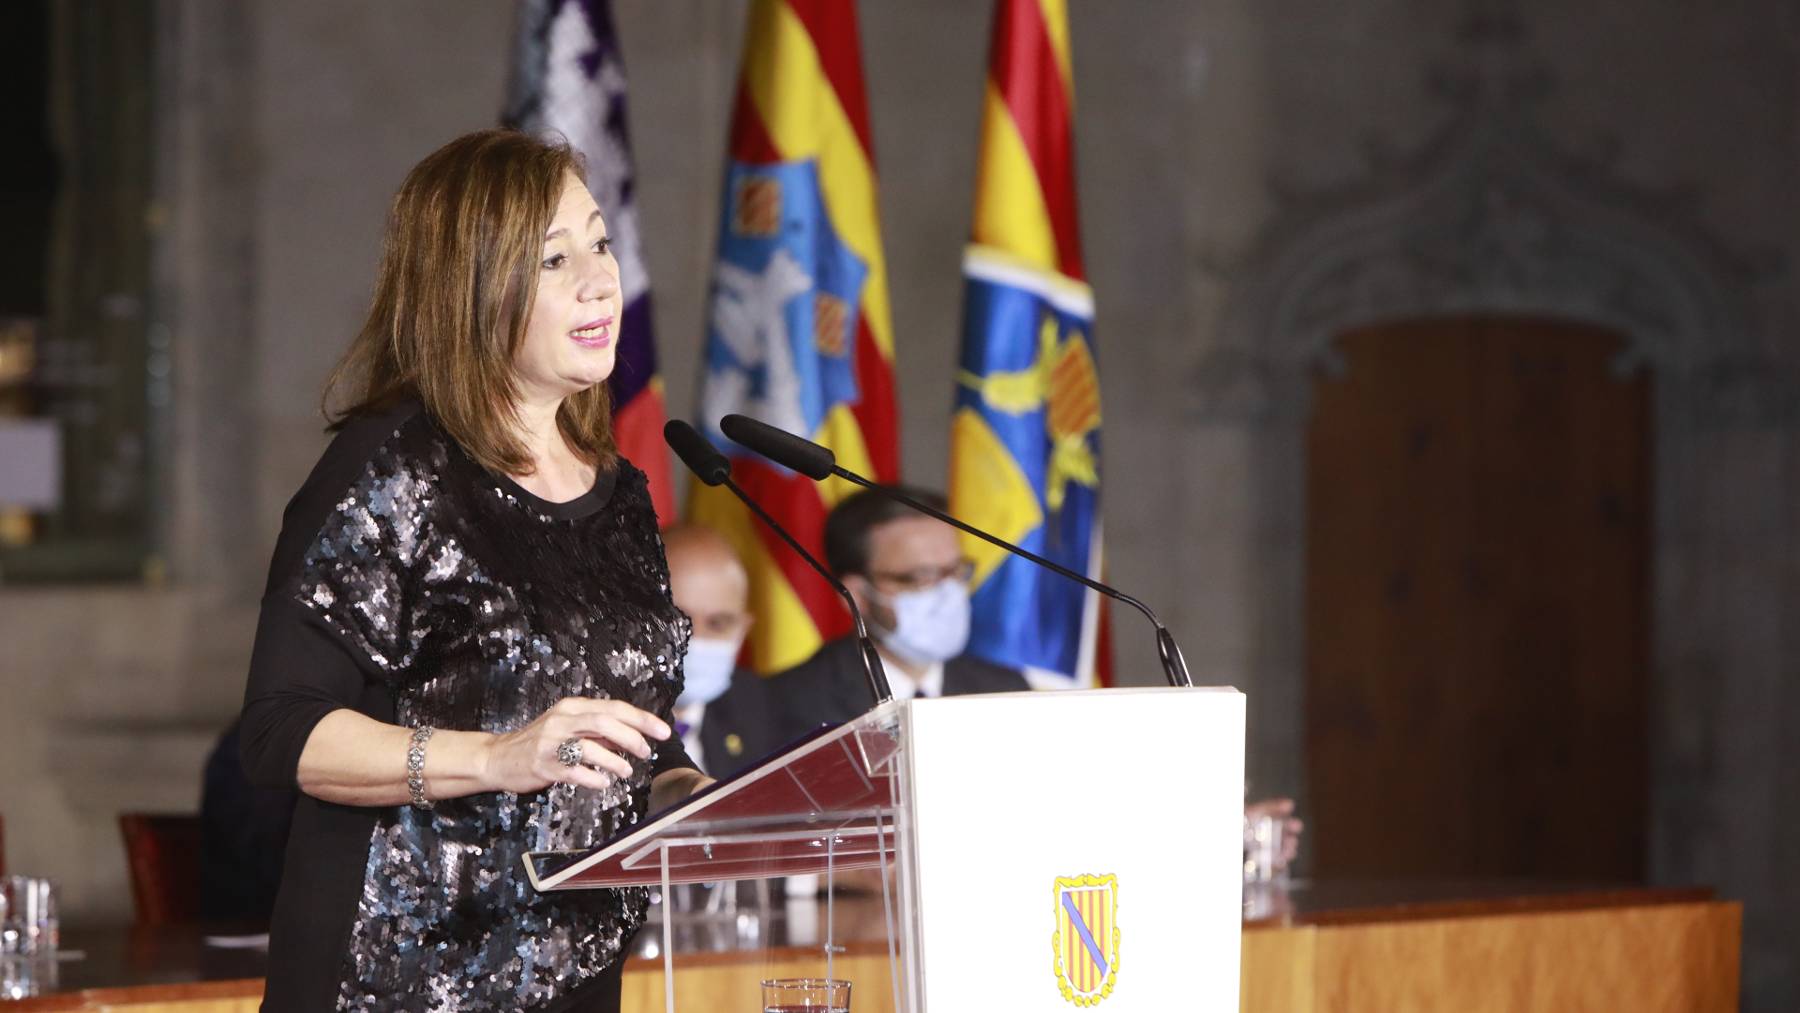 La presidenta Francina Armengol durante su intervención en el acto central del Día de Baleares celebrado en La Lonja.